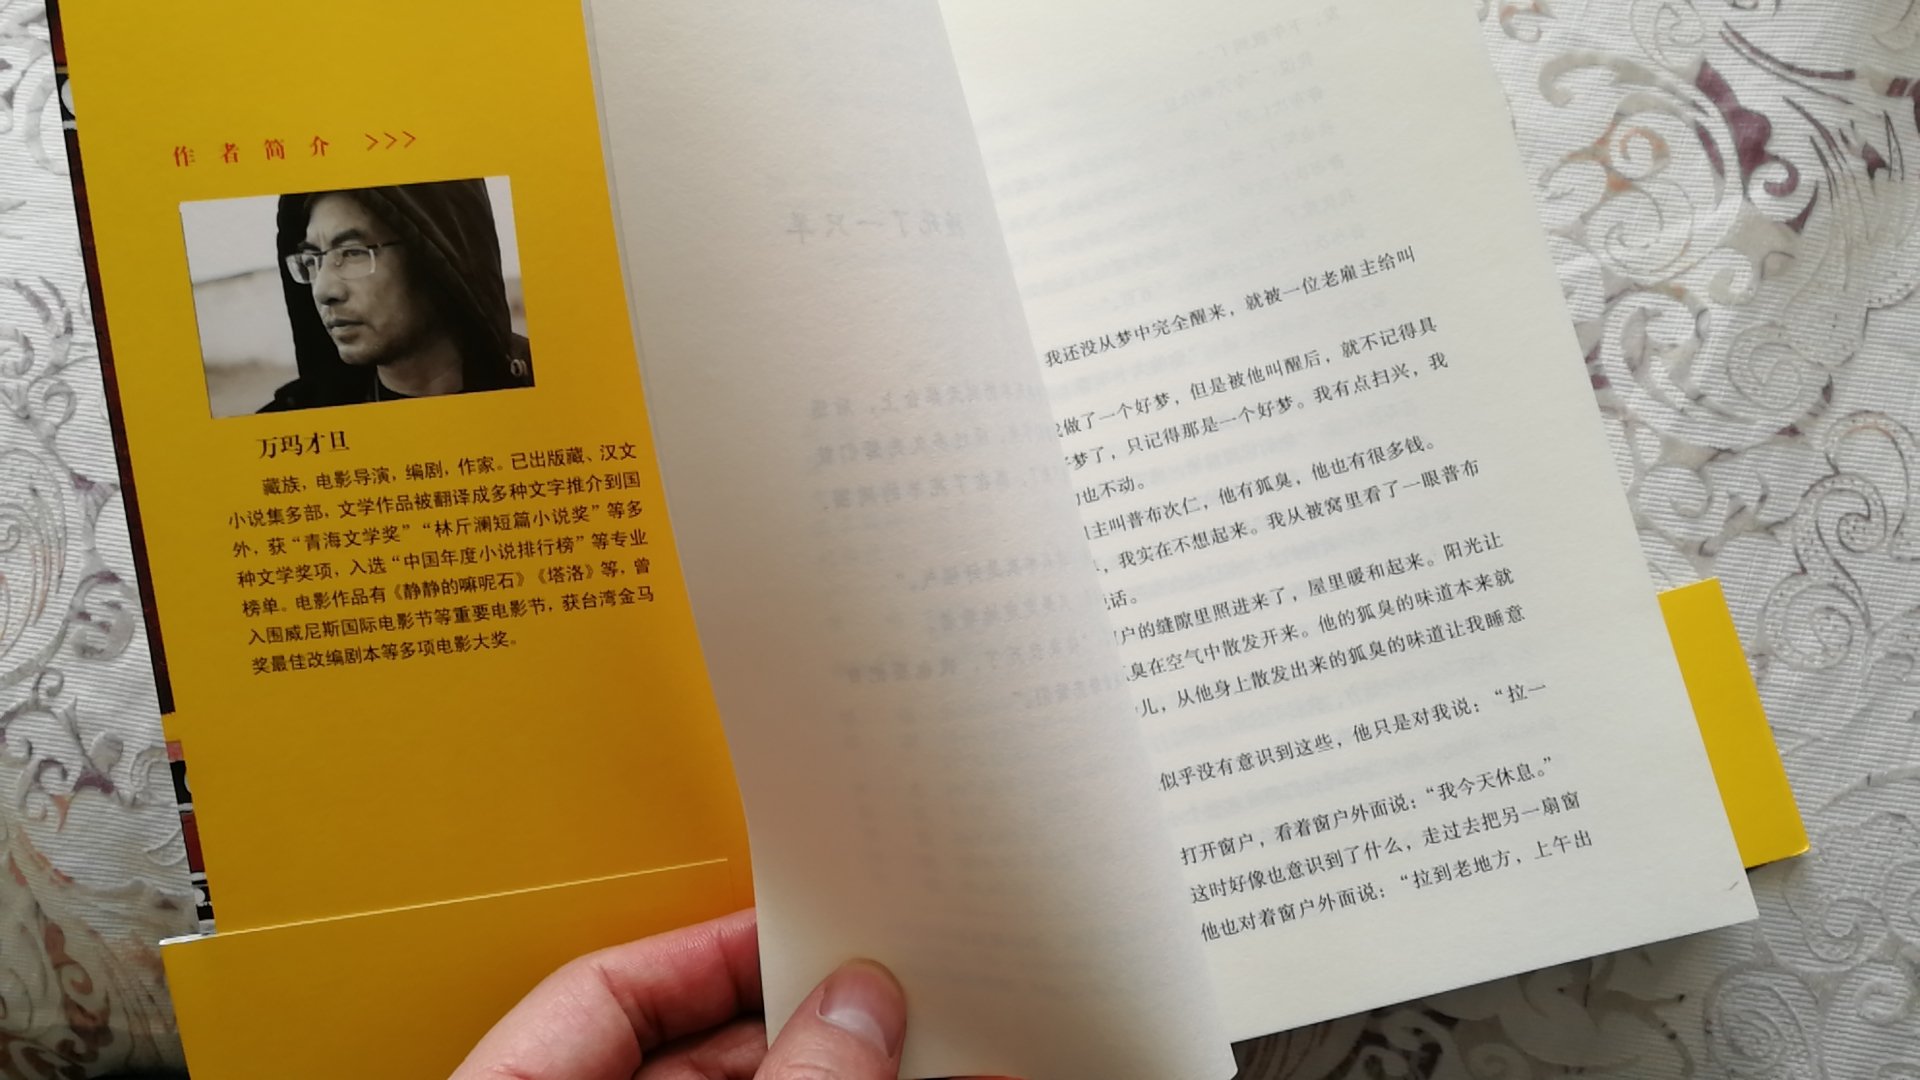 撞#一只羊，台湾金马奖作品，应该值得读一读。期待书中的精彩。